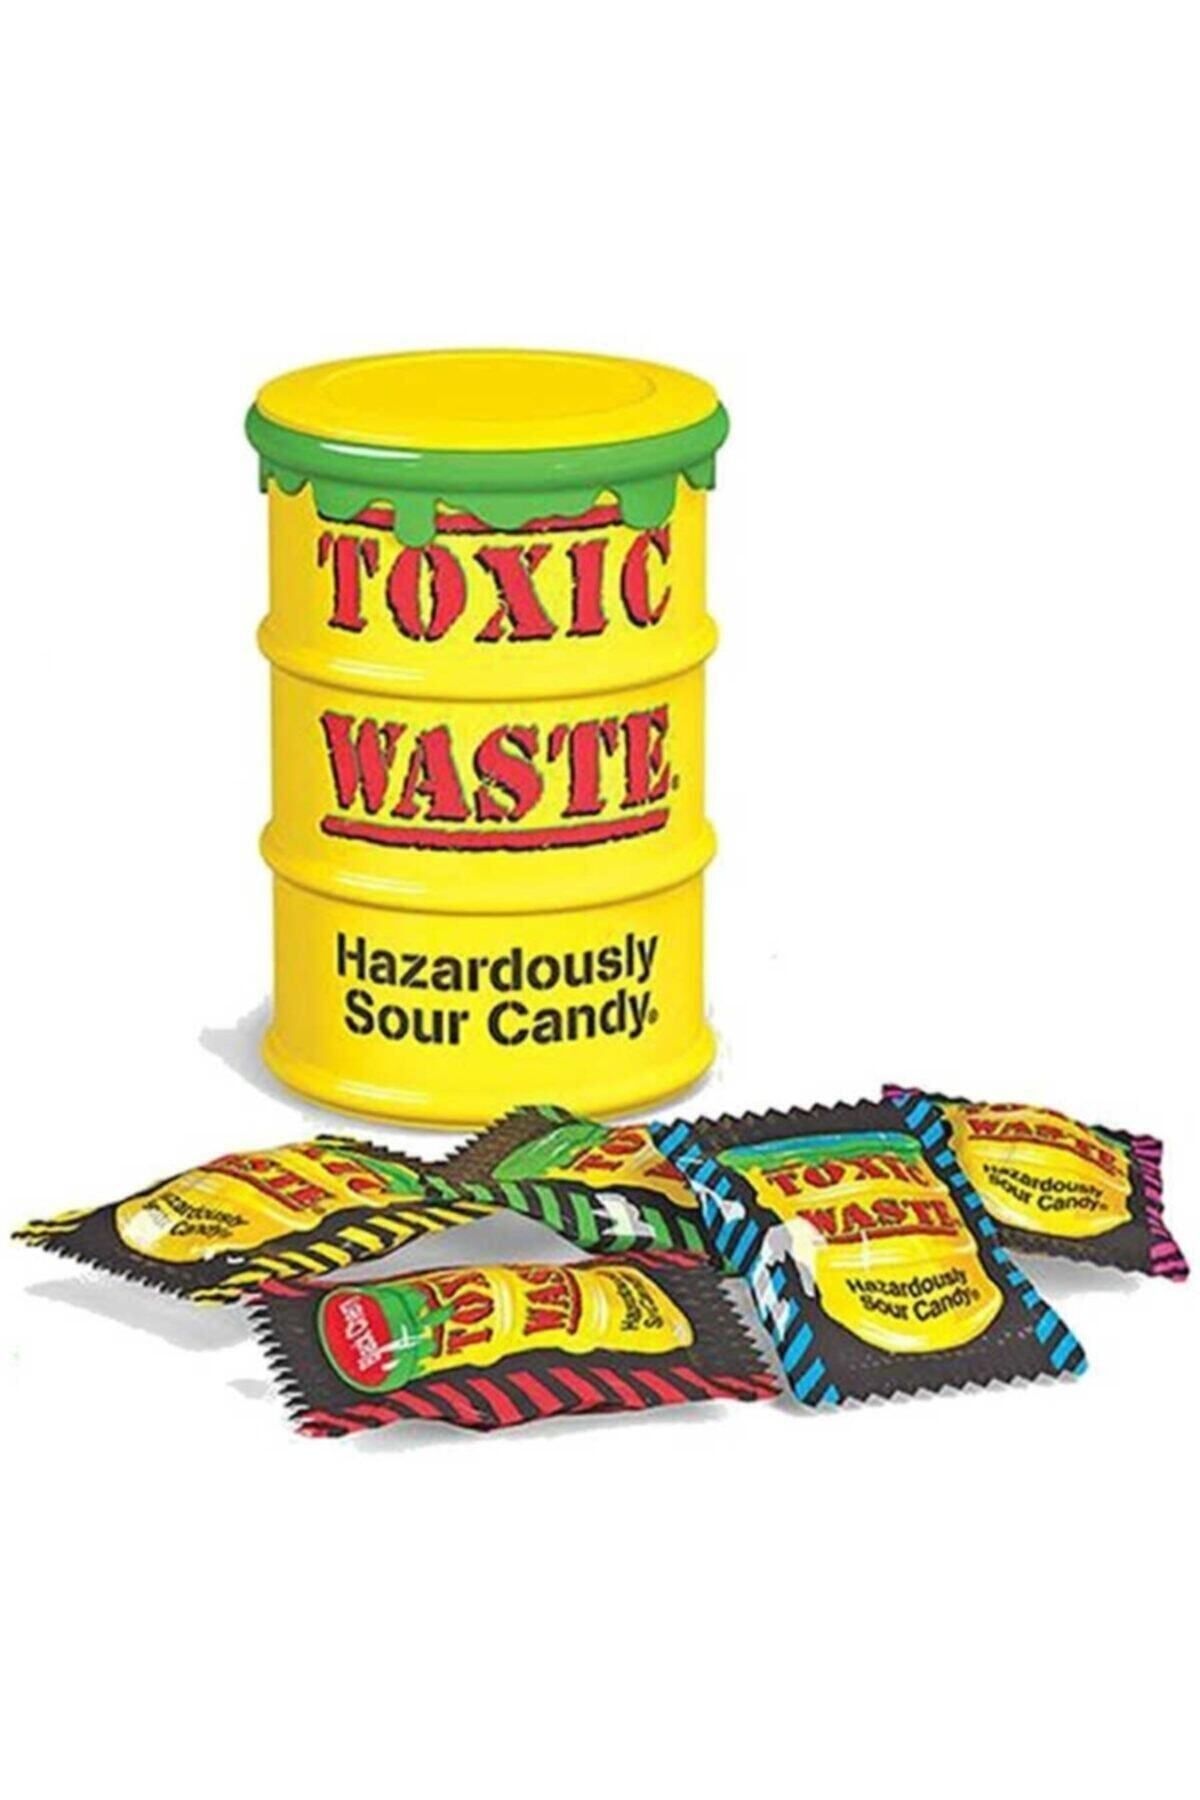 Токсик час. Toxic waste конфеты. Кислые конфеты Токсик. Кислые конфеты Toxic waste. Токсик Вейст самые кислые конфеты.